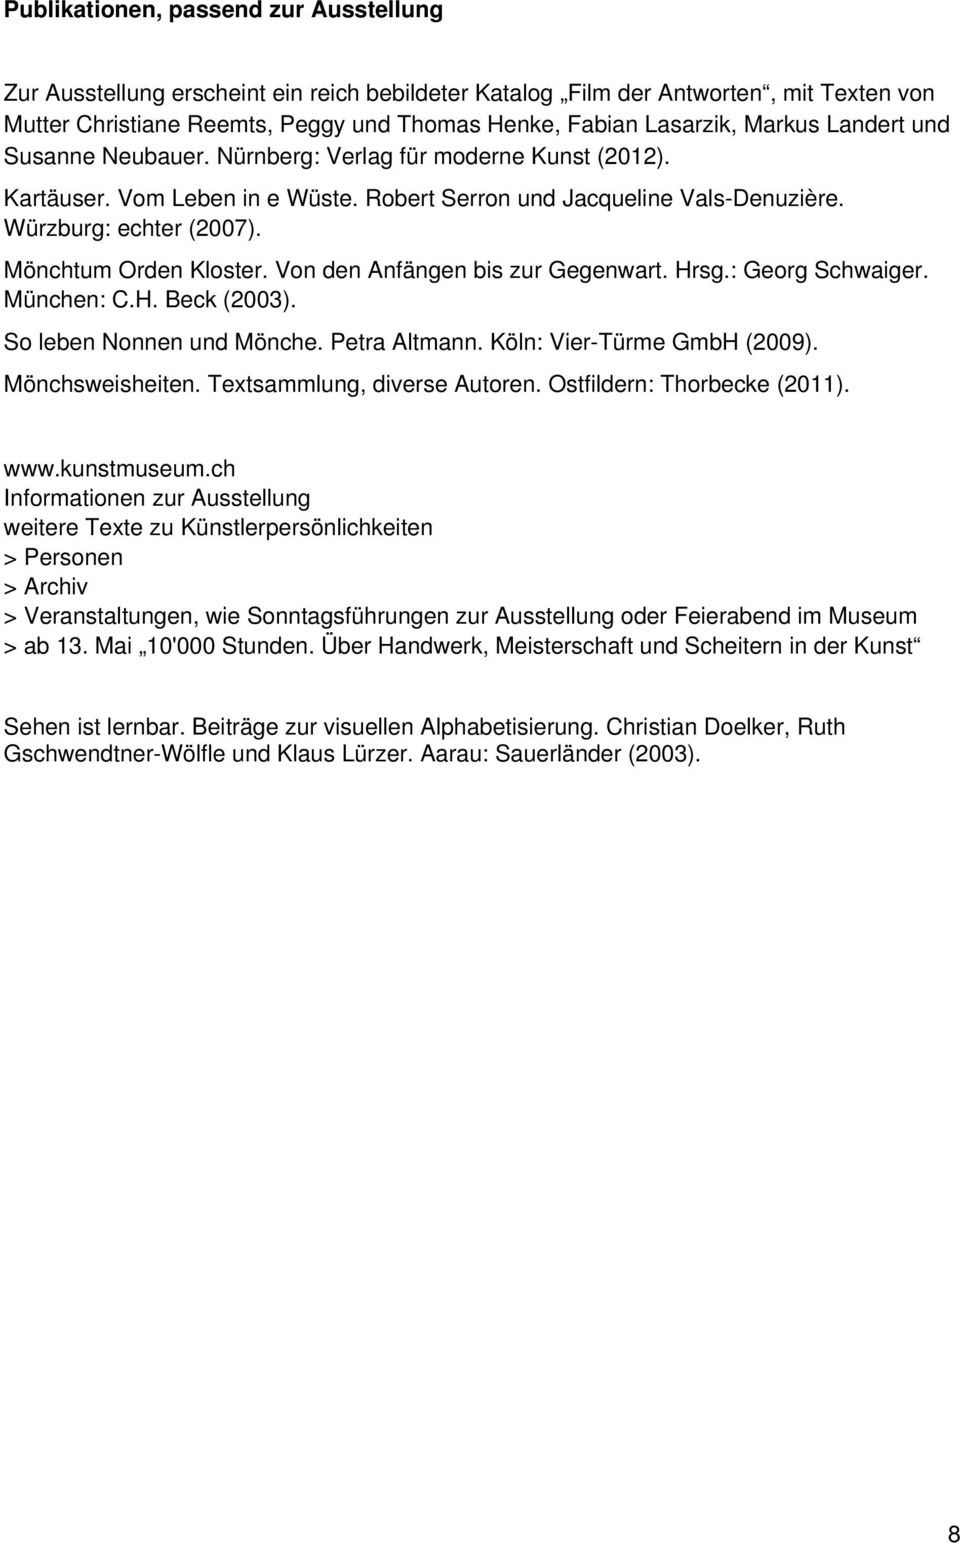 Mönchtum Orden Kloster. Von den Anfängen bis zur Gegenwart. Hrsg.: Georg Schwaiger. München: C.H. Beck (2003). So leben Nonnen und Mönche. Petra Altmann. Köln: Vier-Türme GmbH (2009).